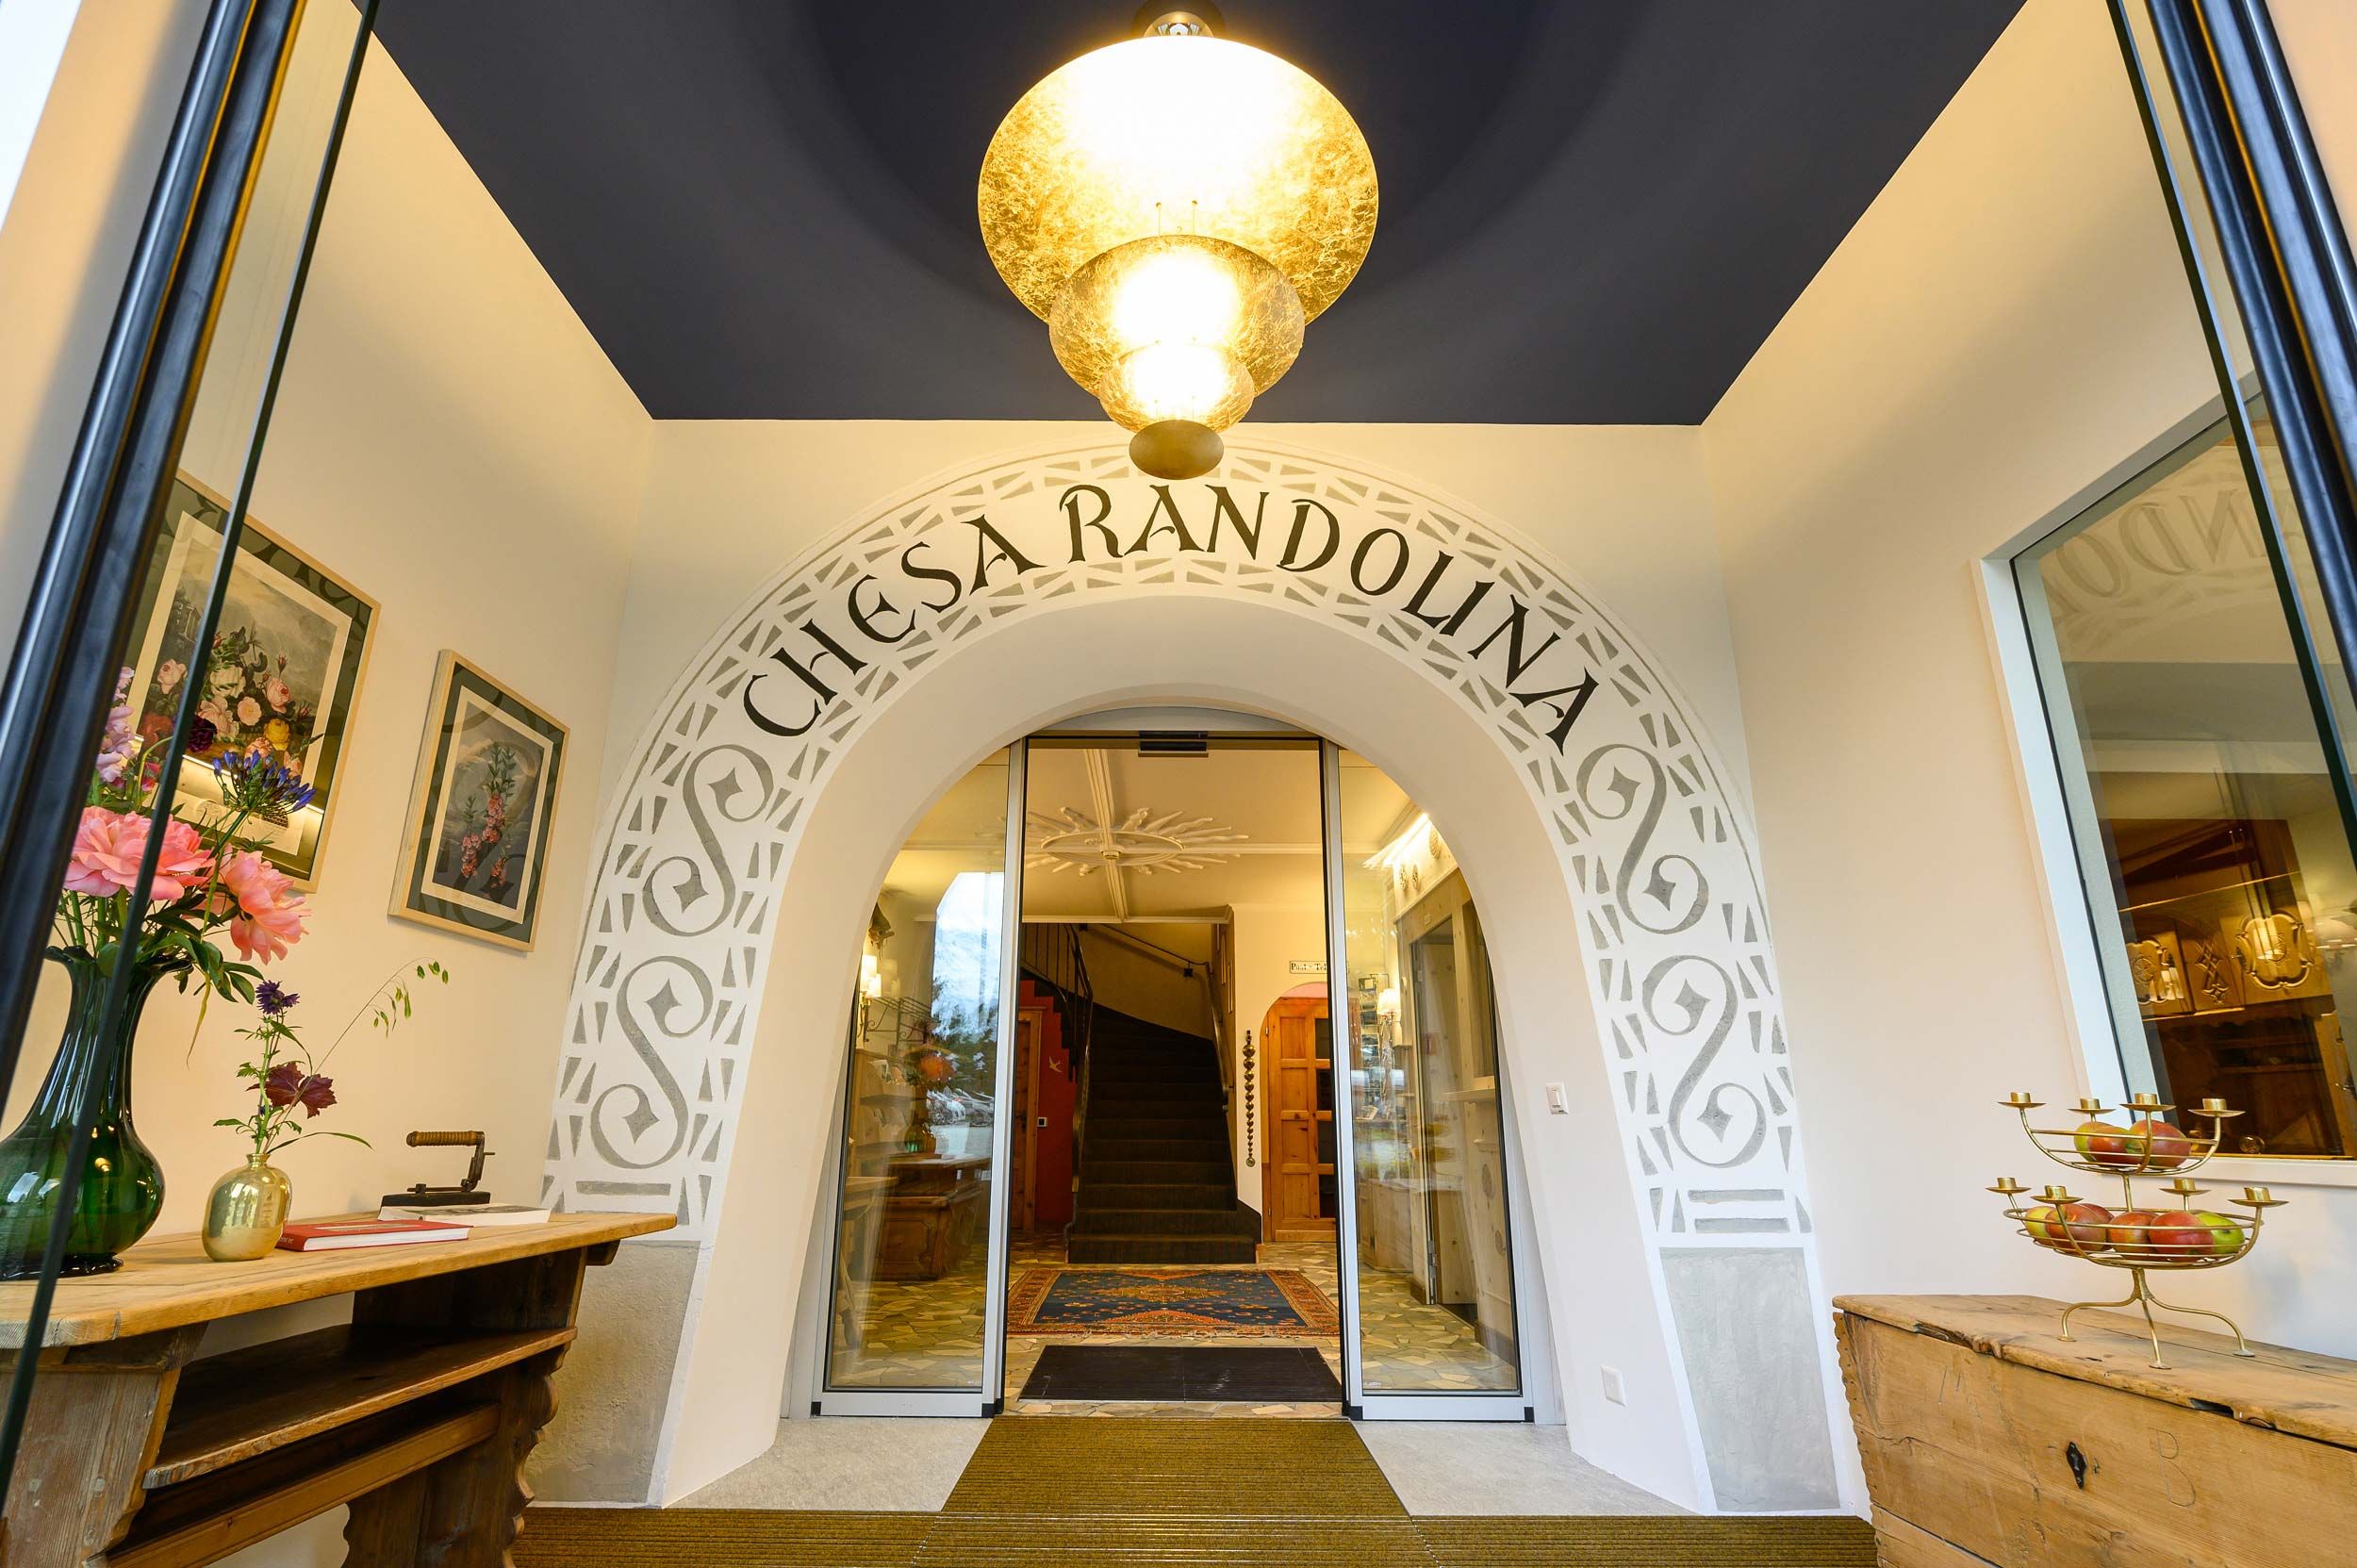 Hotel Chesa Randolina